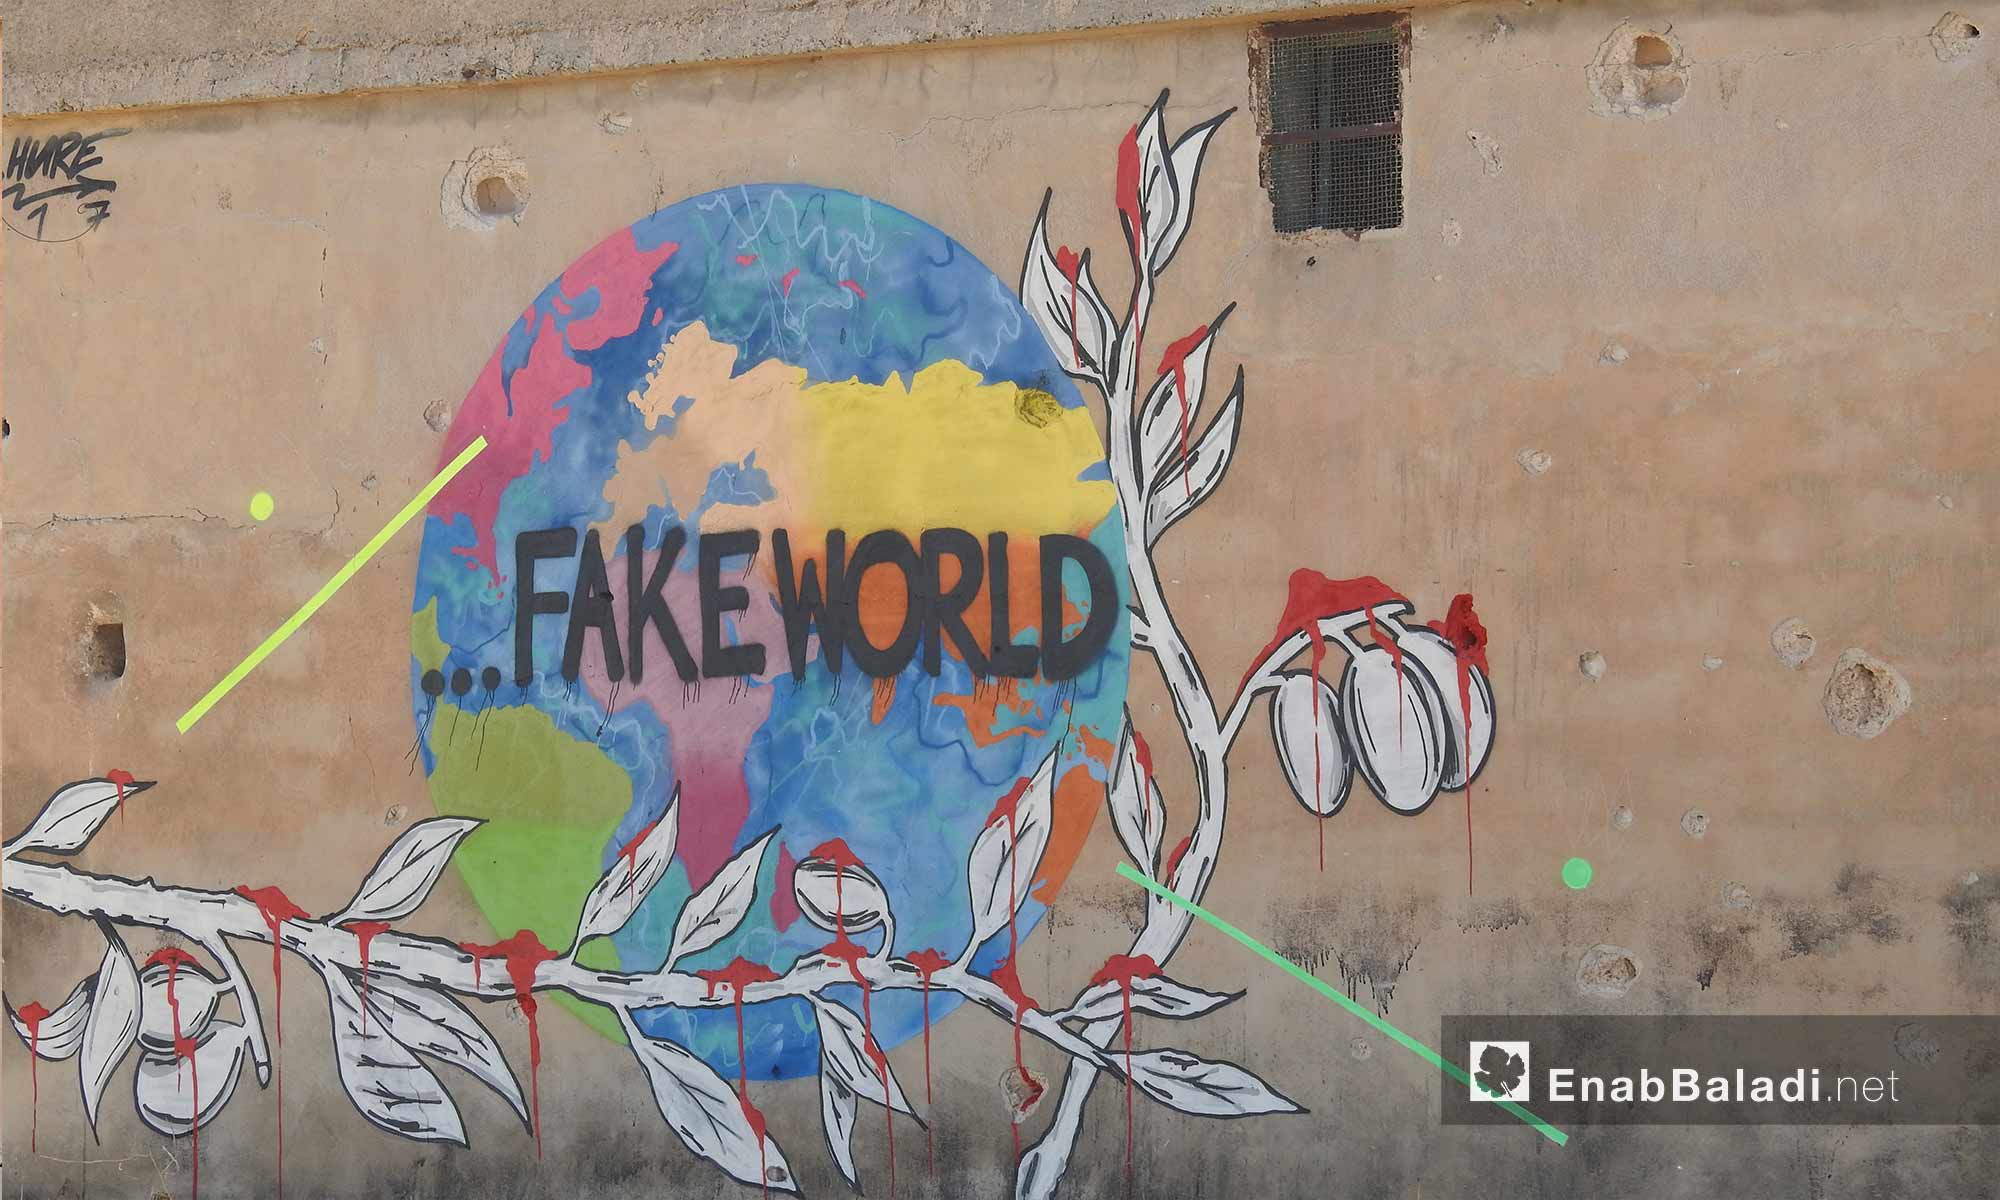 رسم غرافيتي على جدران مهدمة في قرية براغيدة بريف حلب الشمالي - 2 تشرين الأول 2017 (عنب بلدي)